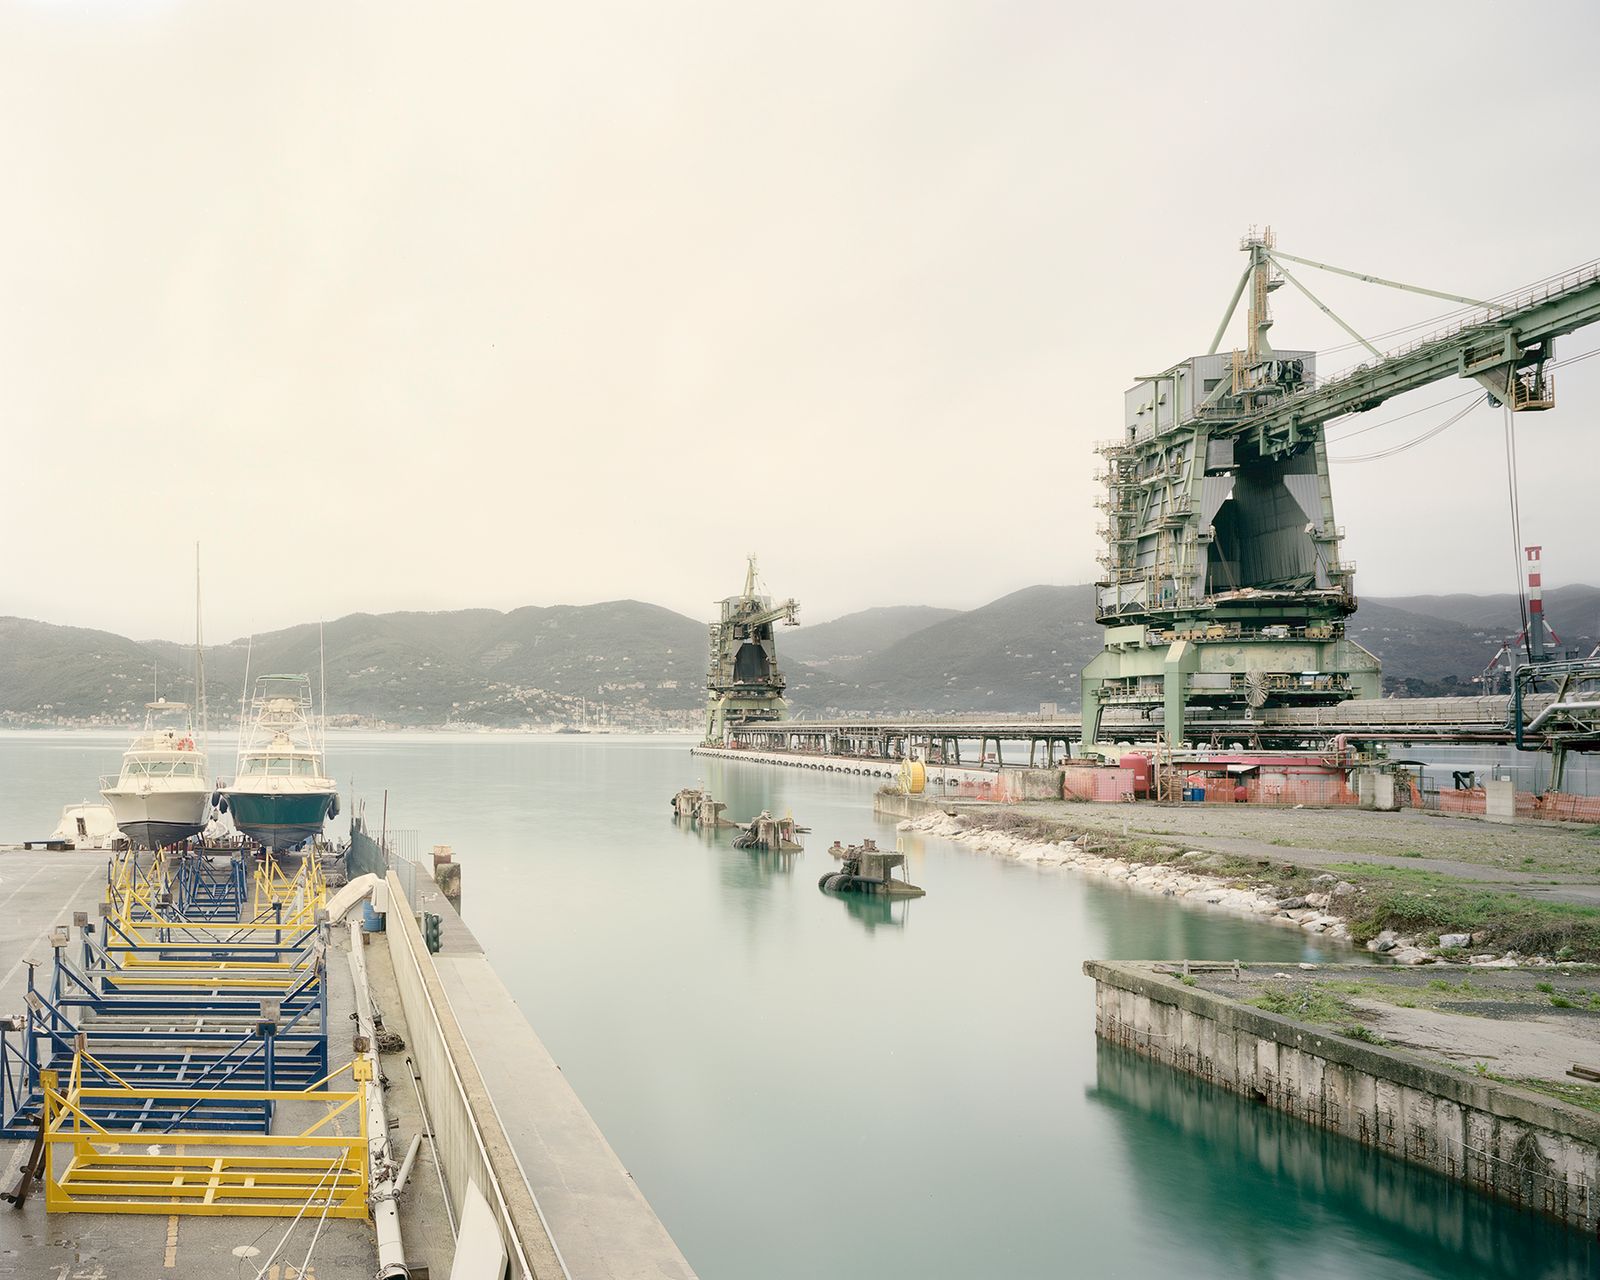 © Pietro Viti - The docks of the Enel power plant in La Spezia, where the bulk cargos dock. (La Spezia, Italy, 2014)